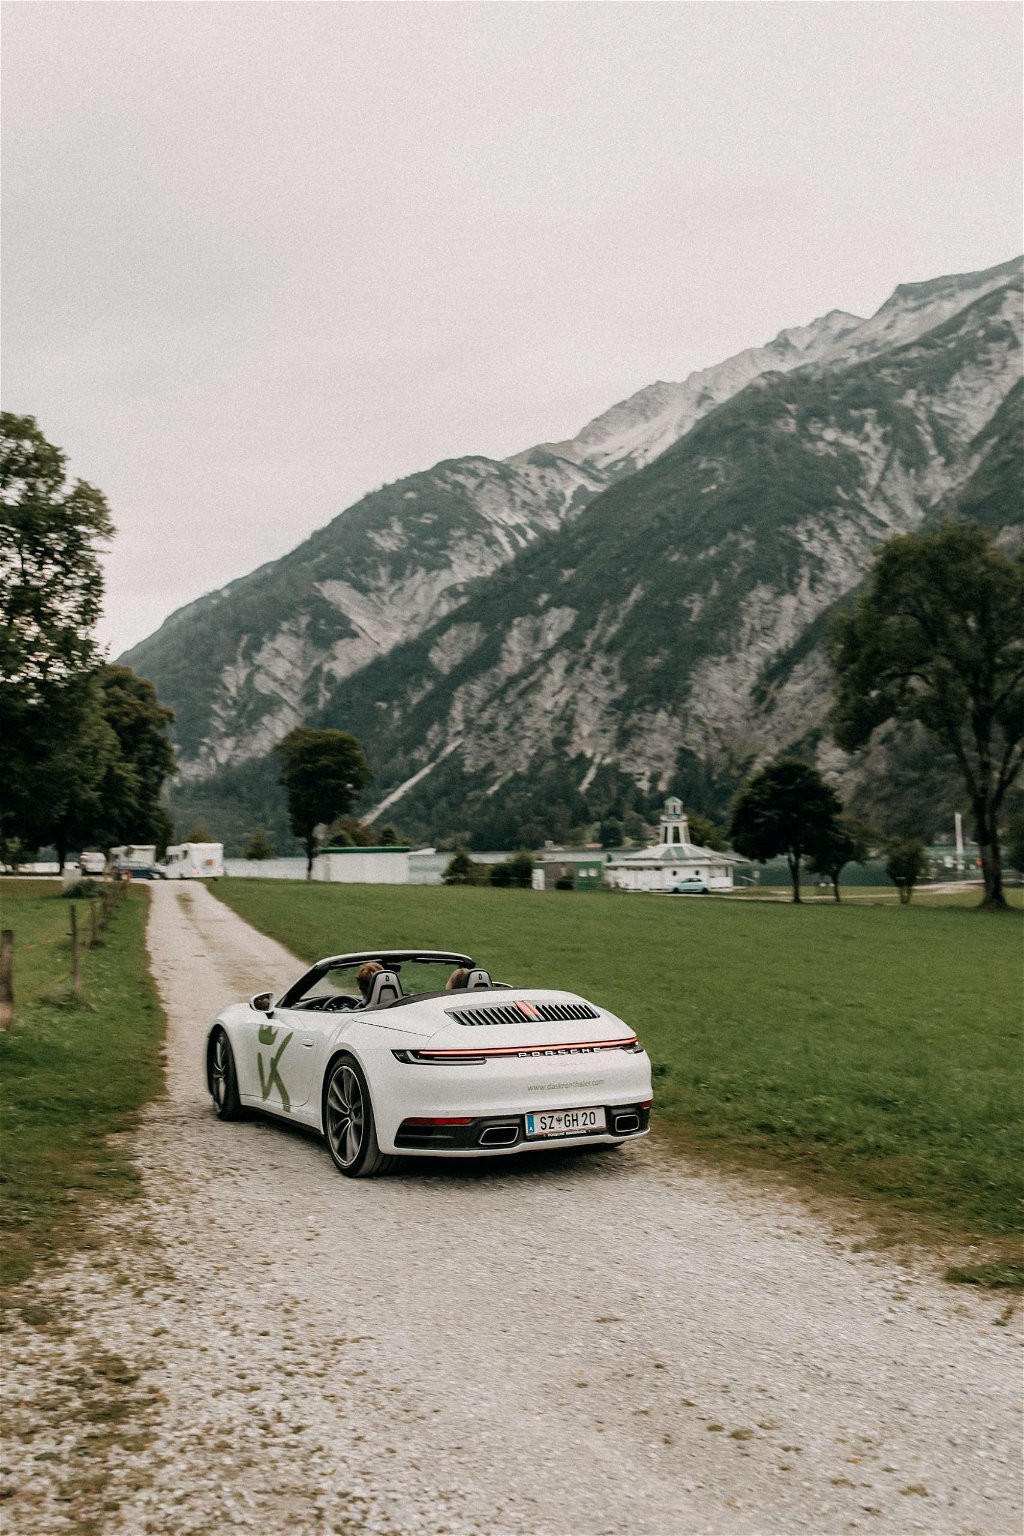 Porsche holidays in Tyrol – “Das Kronthaler”